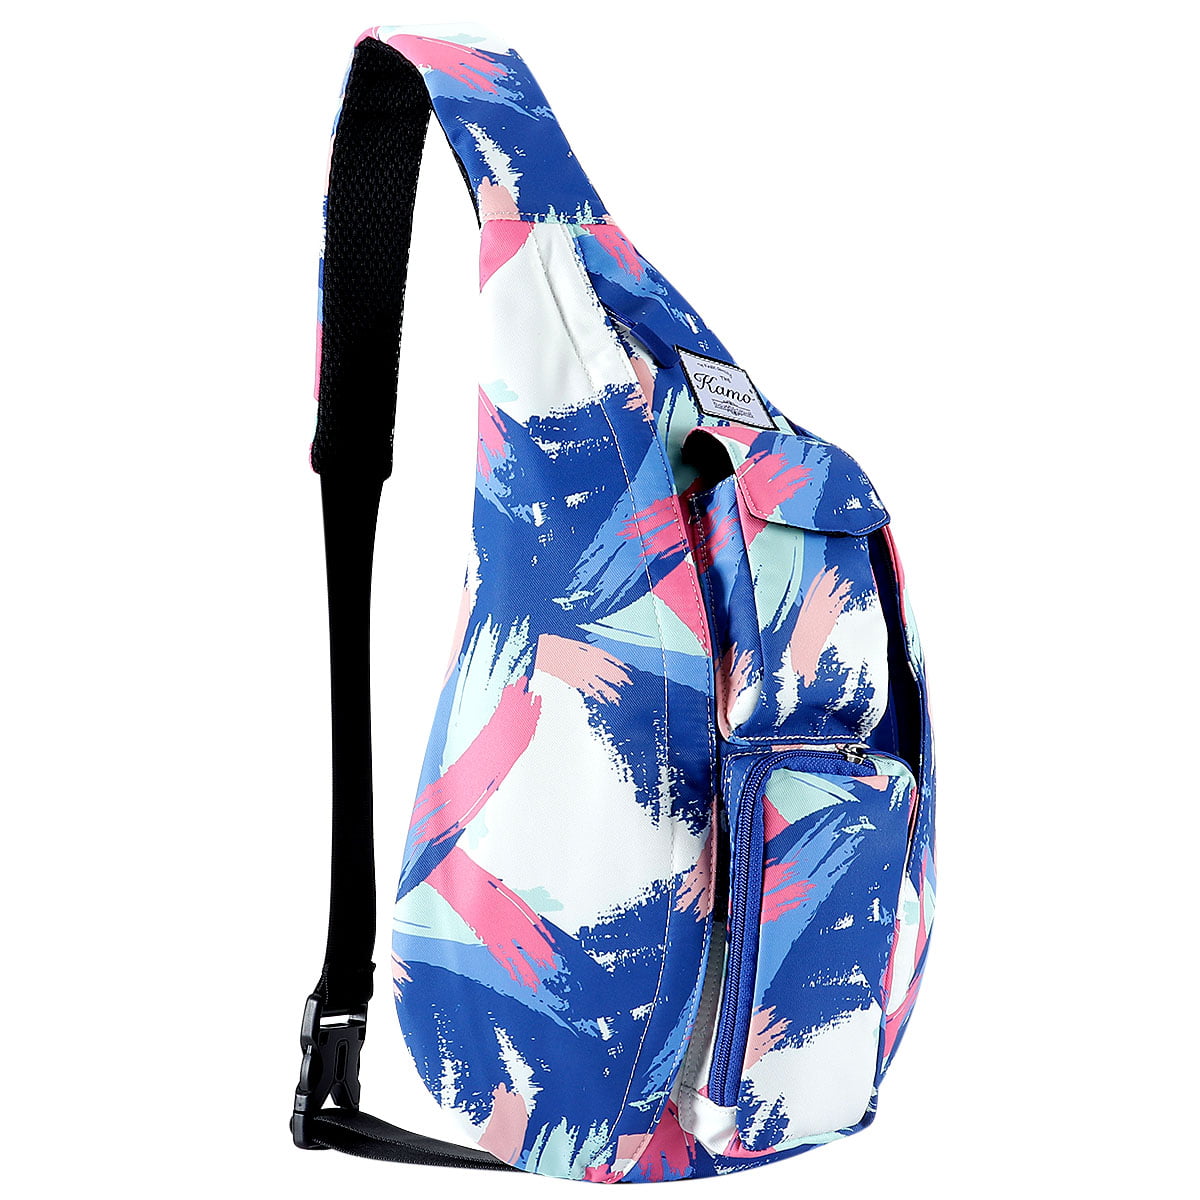 Sling Backpack Water proof Backpacks Sling Shoulder Chest Pack Crossbody Bag for Women Men Girls Boys Travel Daypack